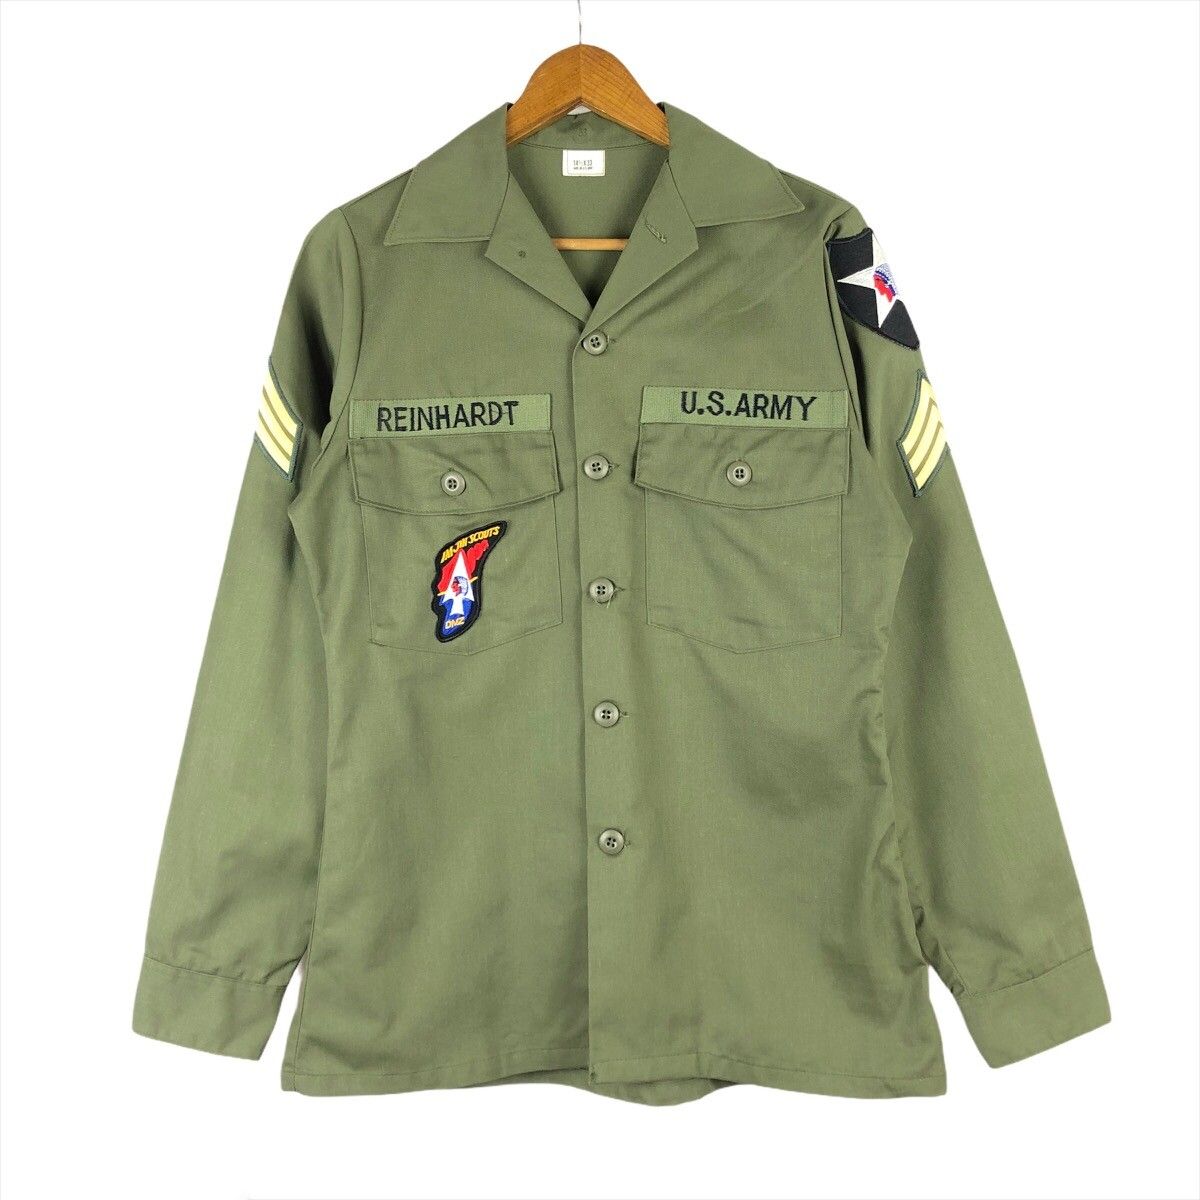 Vintage Vintage John Lennon Replica Army Jacket Size US M / EU 48-50 / 2 - 1 Preview